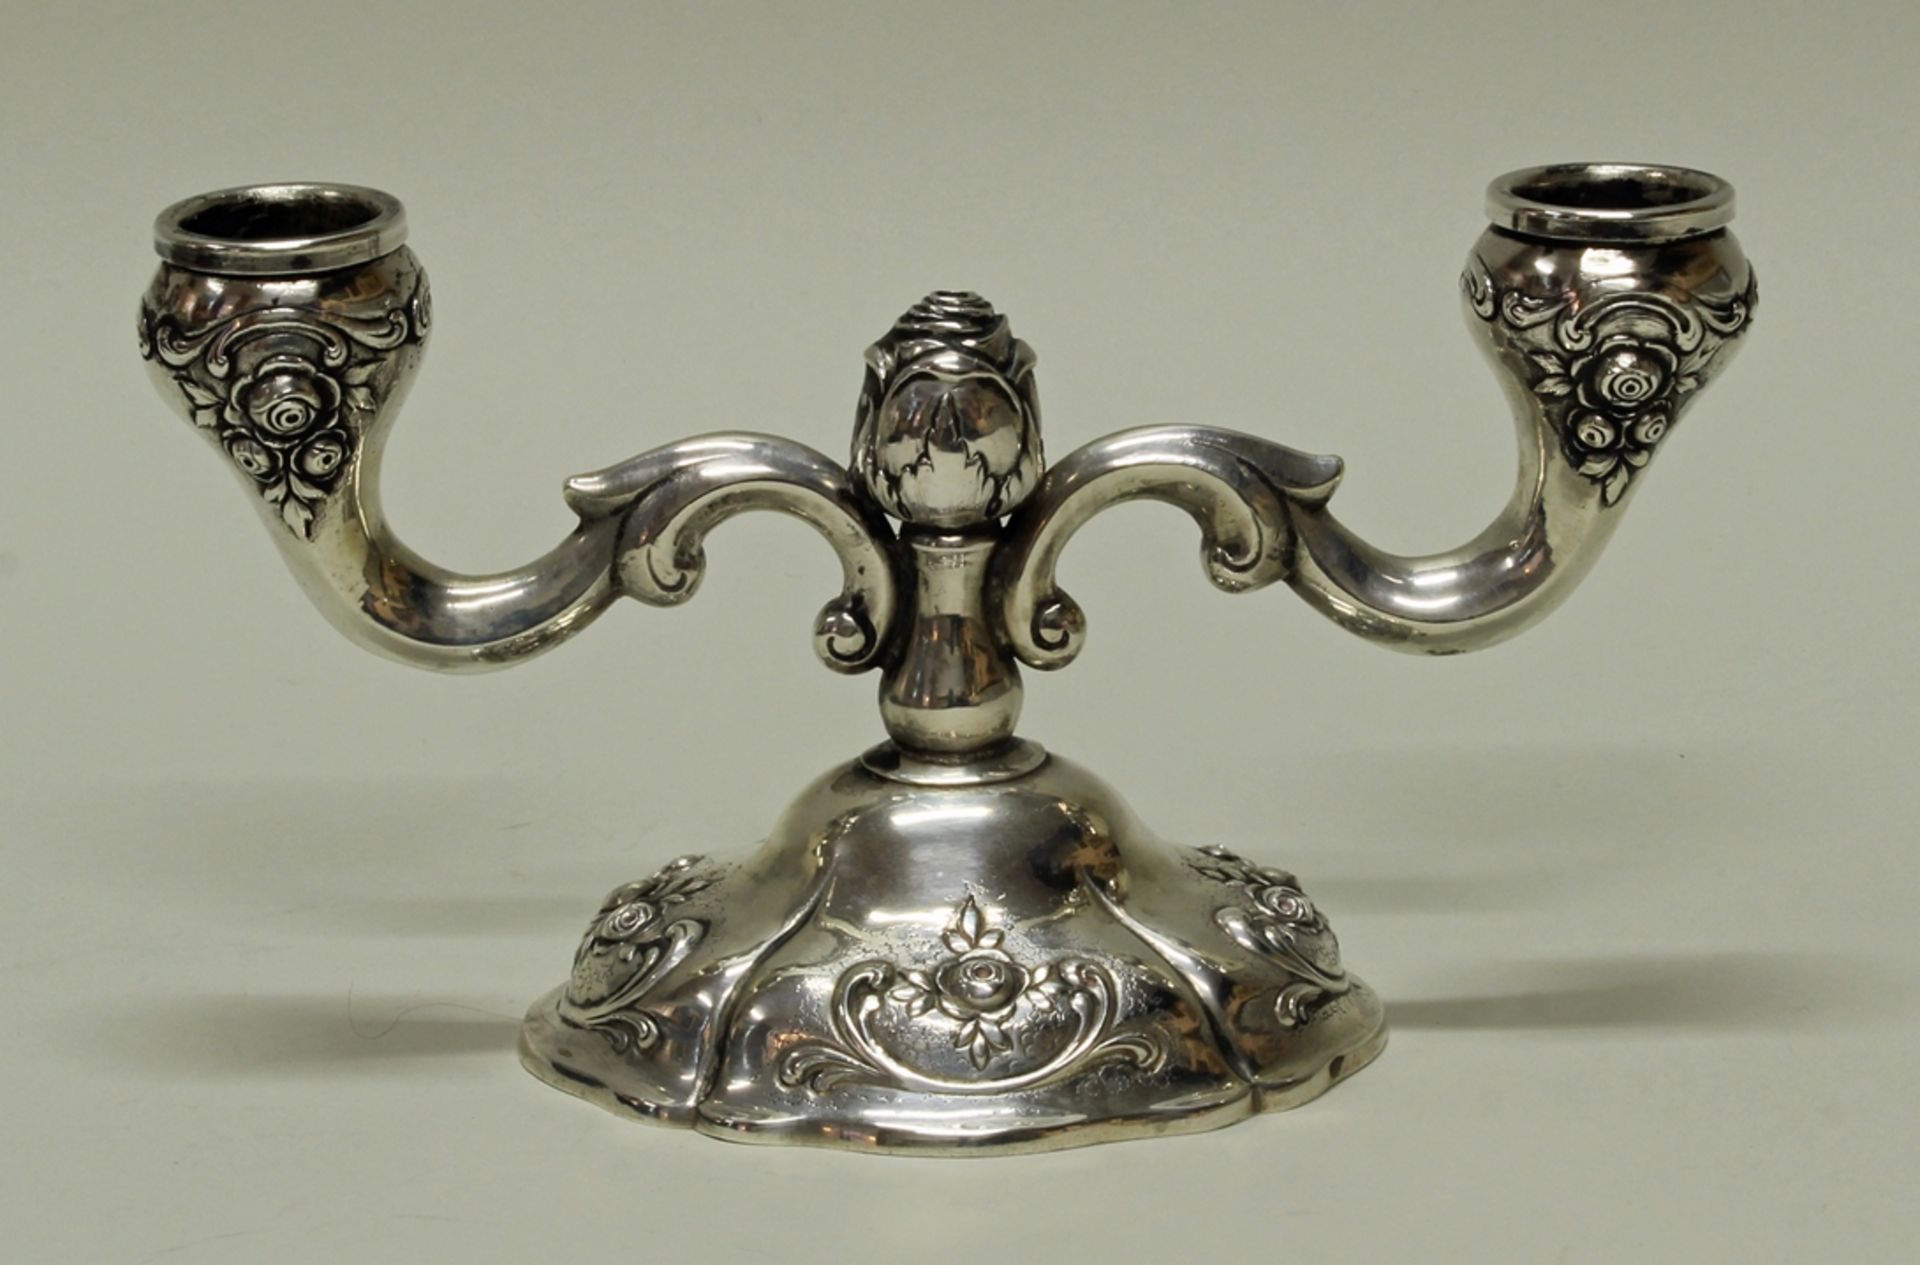 Tischleuchter, Silber 800, deutsch, reliefierte Rosenzier, zweiflammig, 11 cm hoch, ca. 235 g